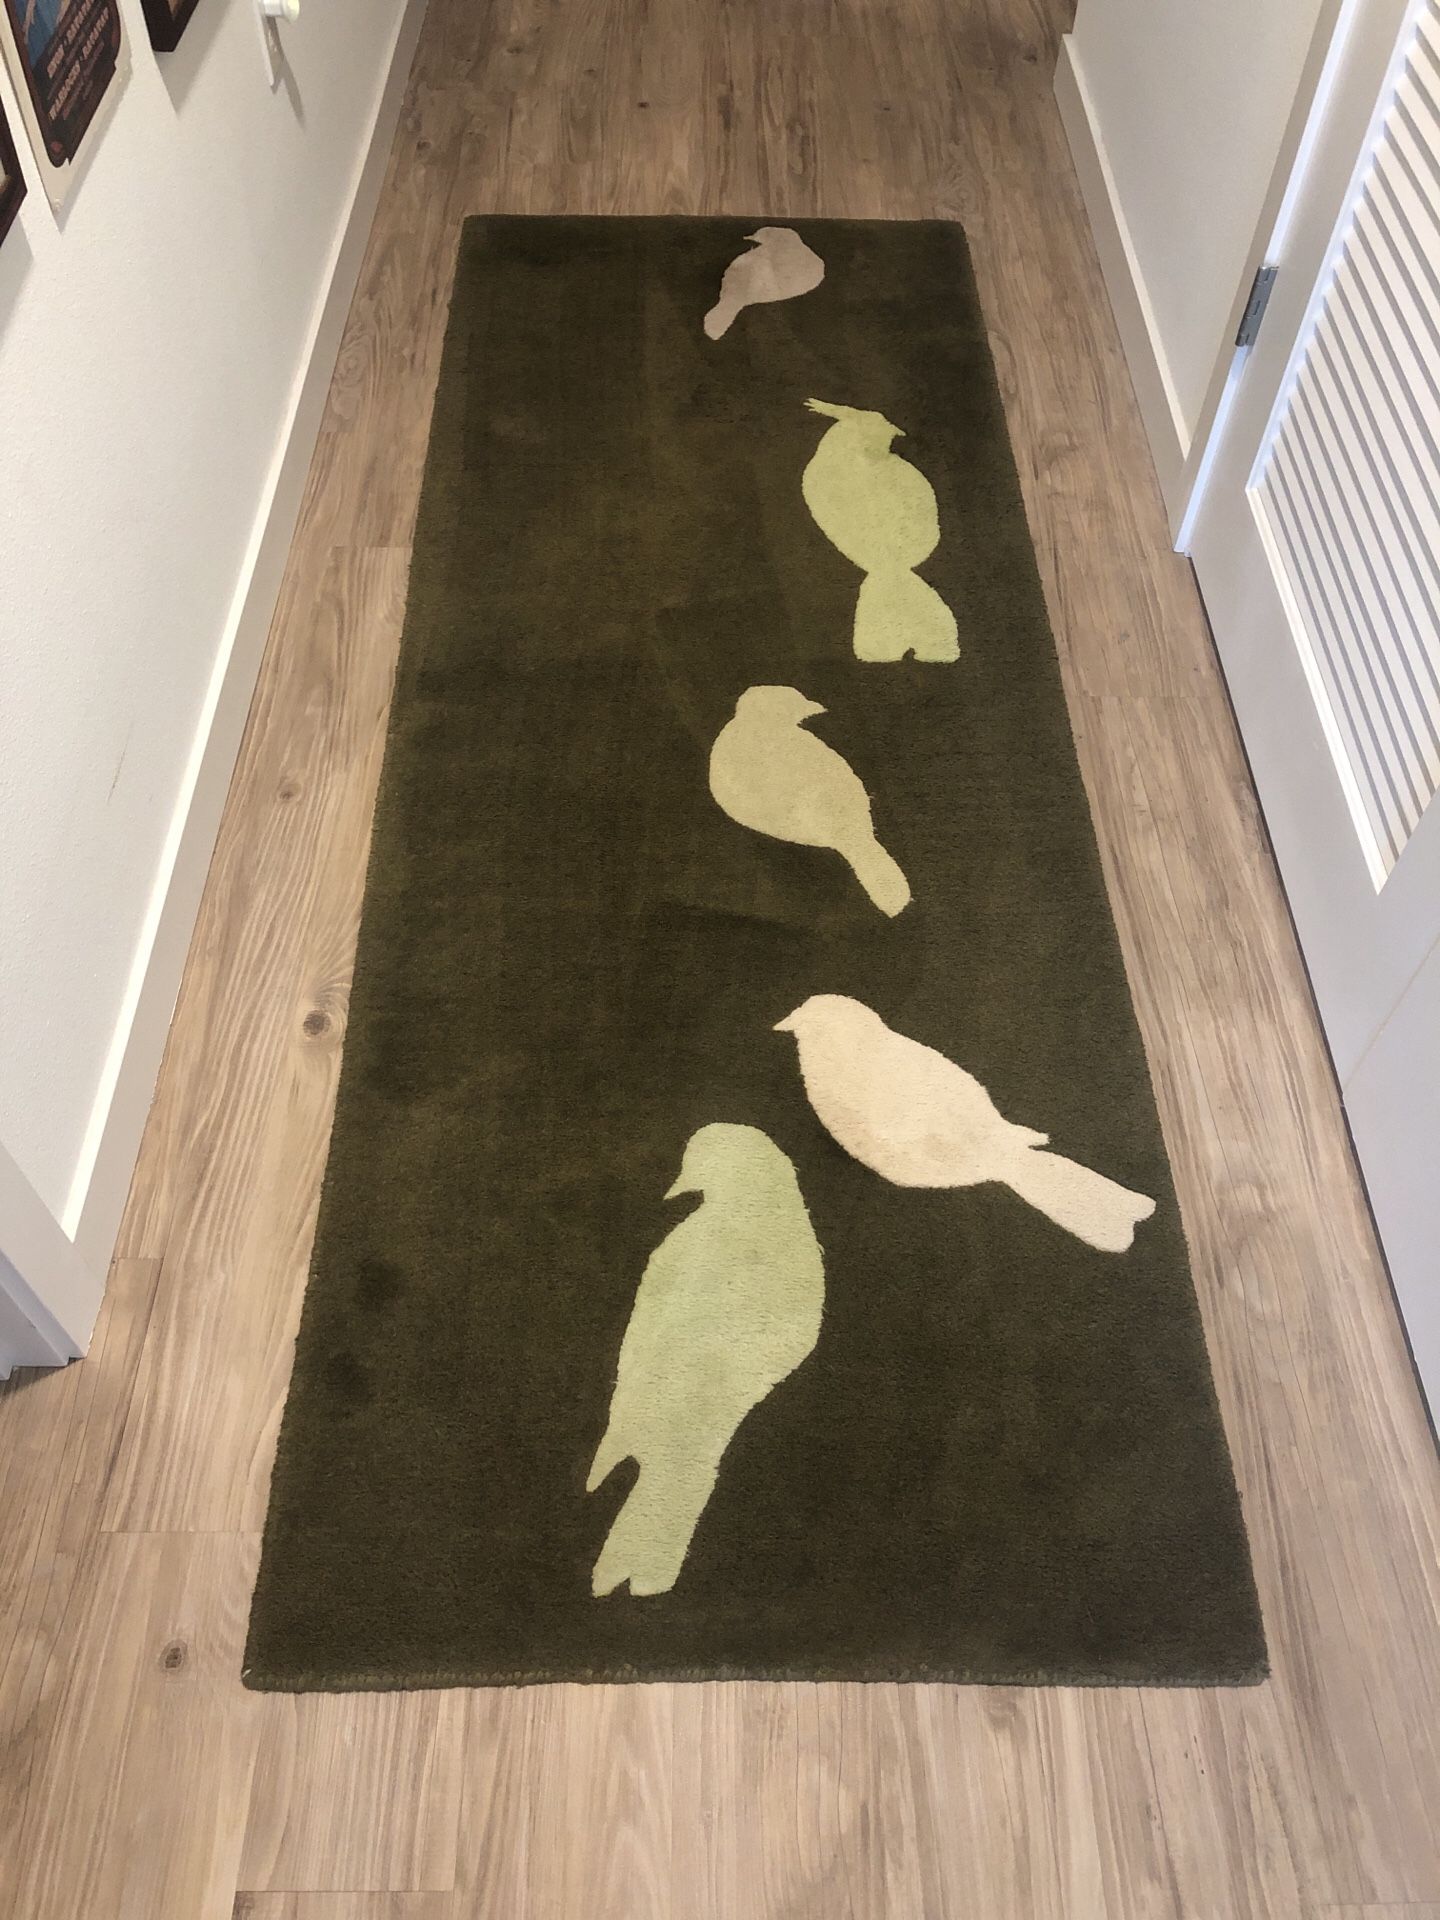 Green love bird rug runner by West Elm 2.5 x 7